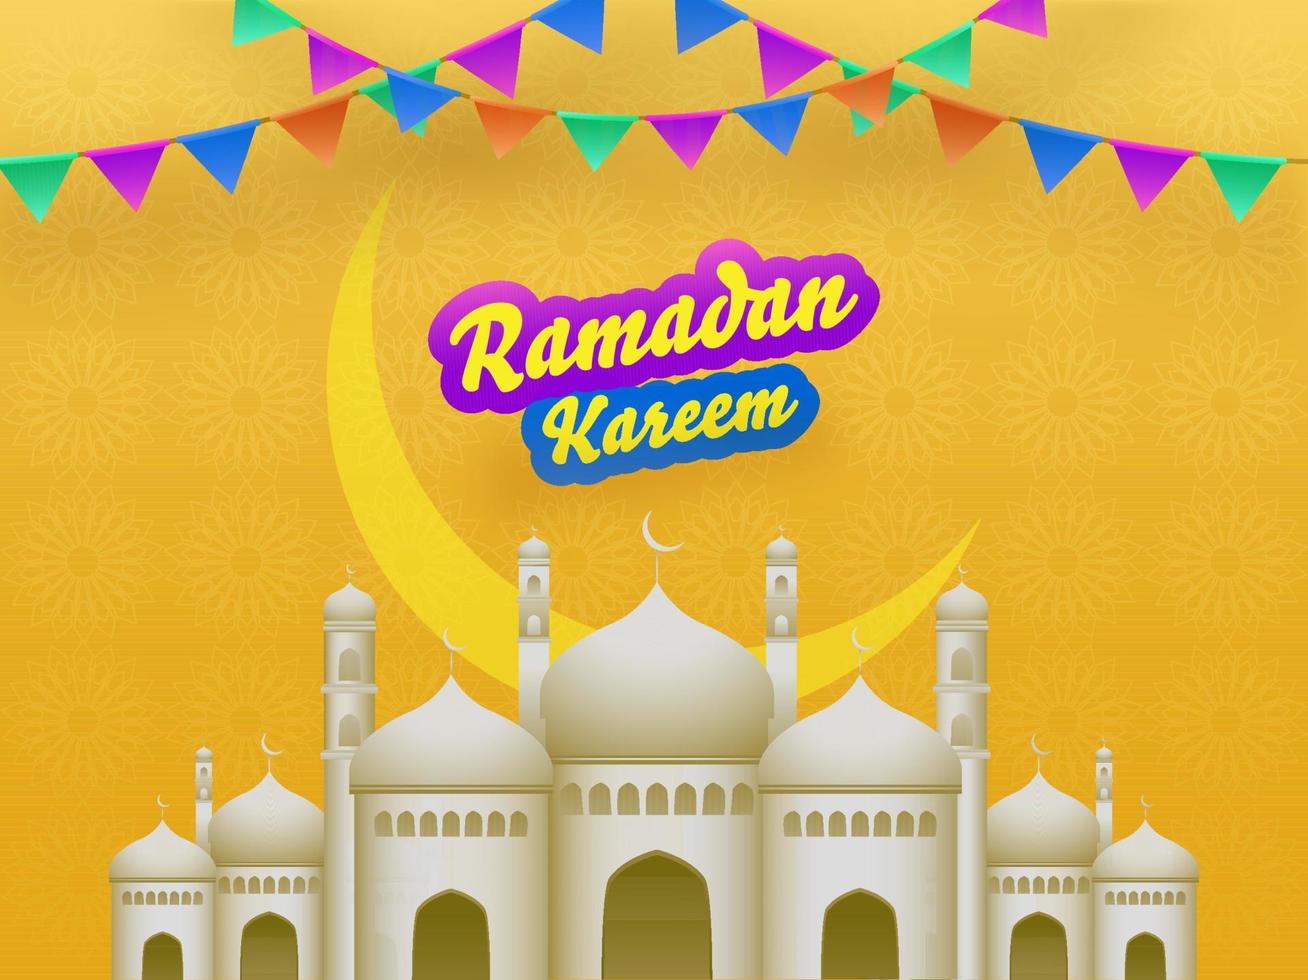 islamic helig månad av böner, ramadan kareem begrepp med utsökt moské och färgrik flaggväv flaggor på gul bakgrund. vektor